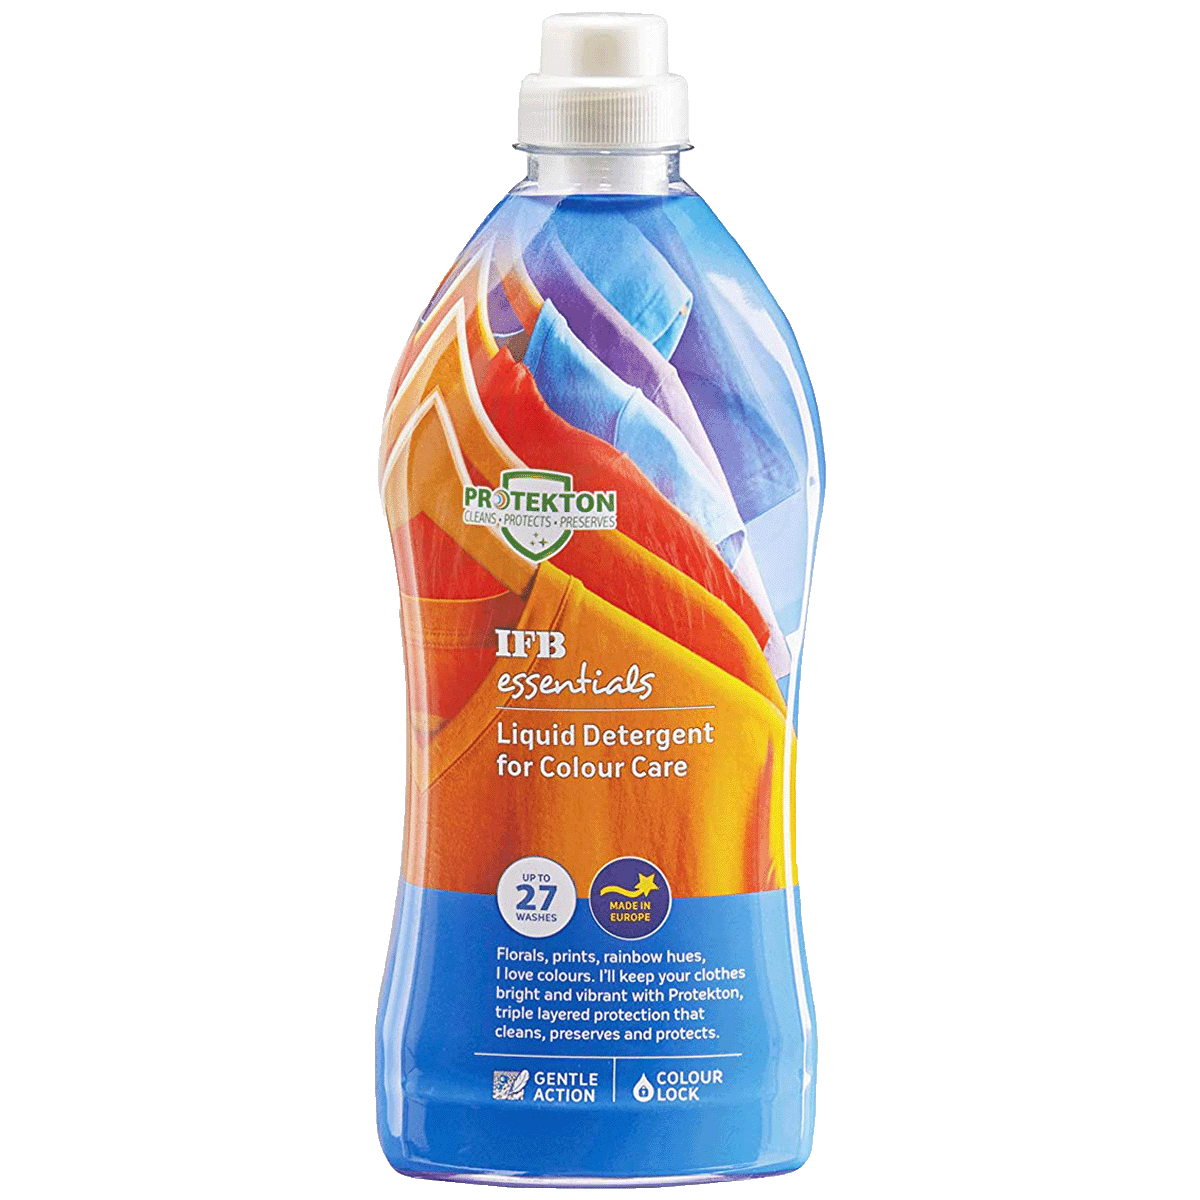 IFB Essentials Liquid Detergent for Colour Care (945ml, Liquid Detergent f, Multicolor)_1